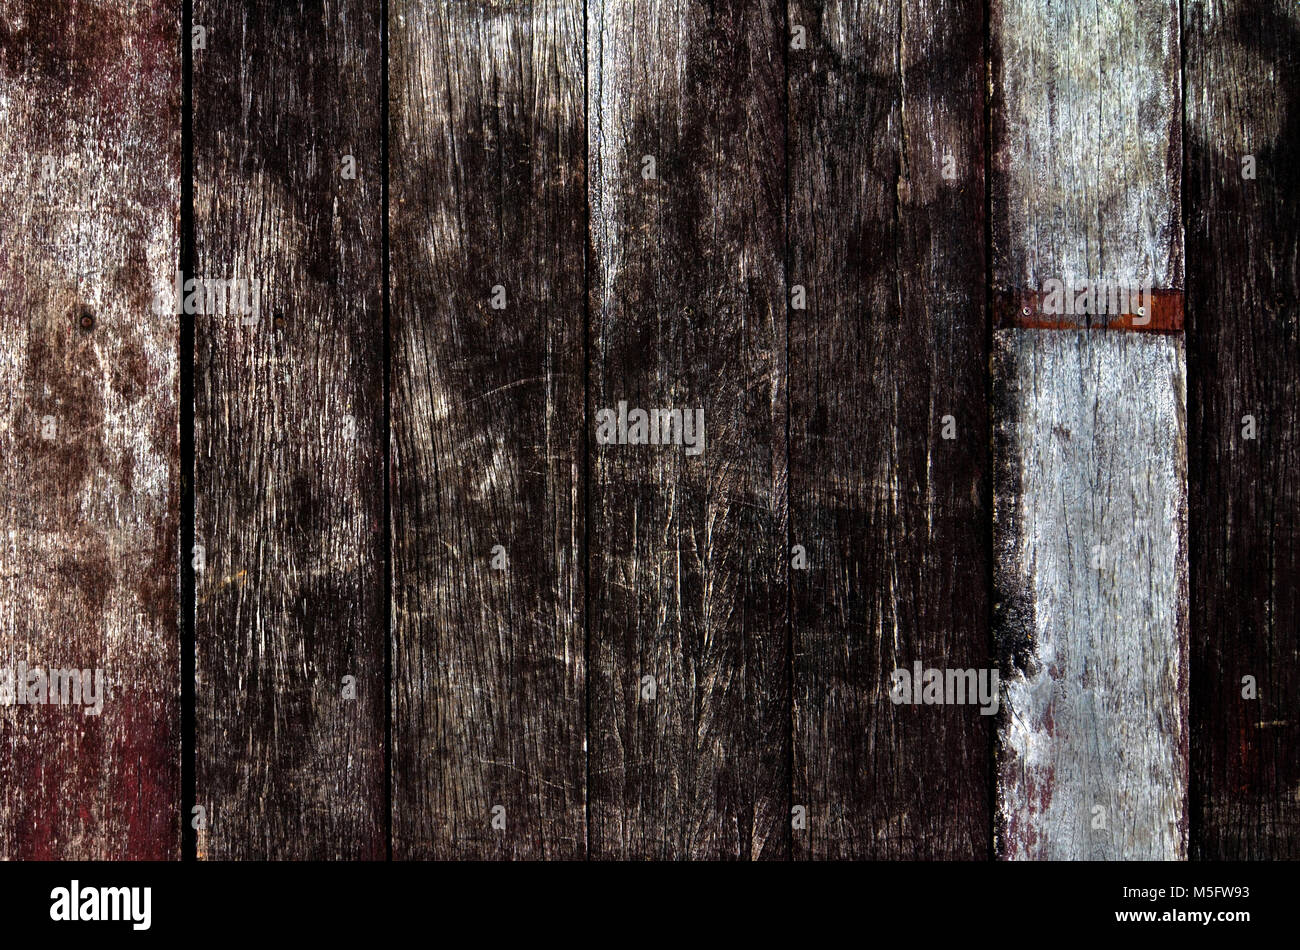 Grunge Textur Fleck auf altem Holz Wand, Nahaufnahme foto Bild von Grunge Textur auf einem alten Holz Wand Fleck ein Detail der Textur und Muster von gr vorhanden Stockfoto